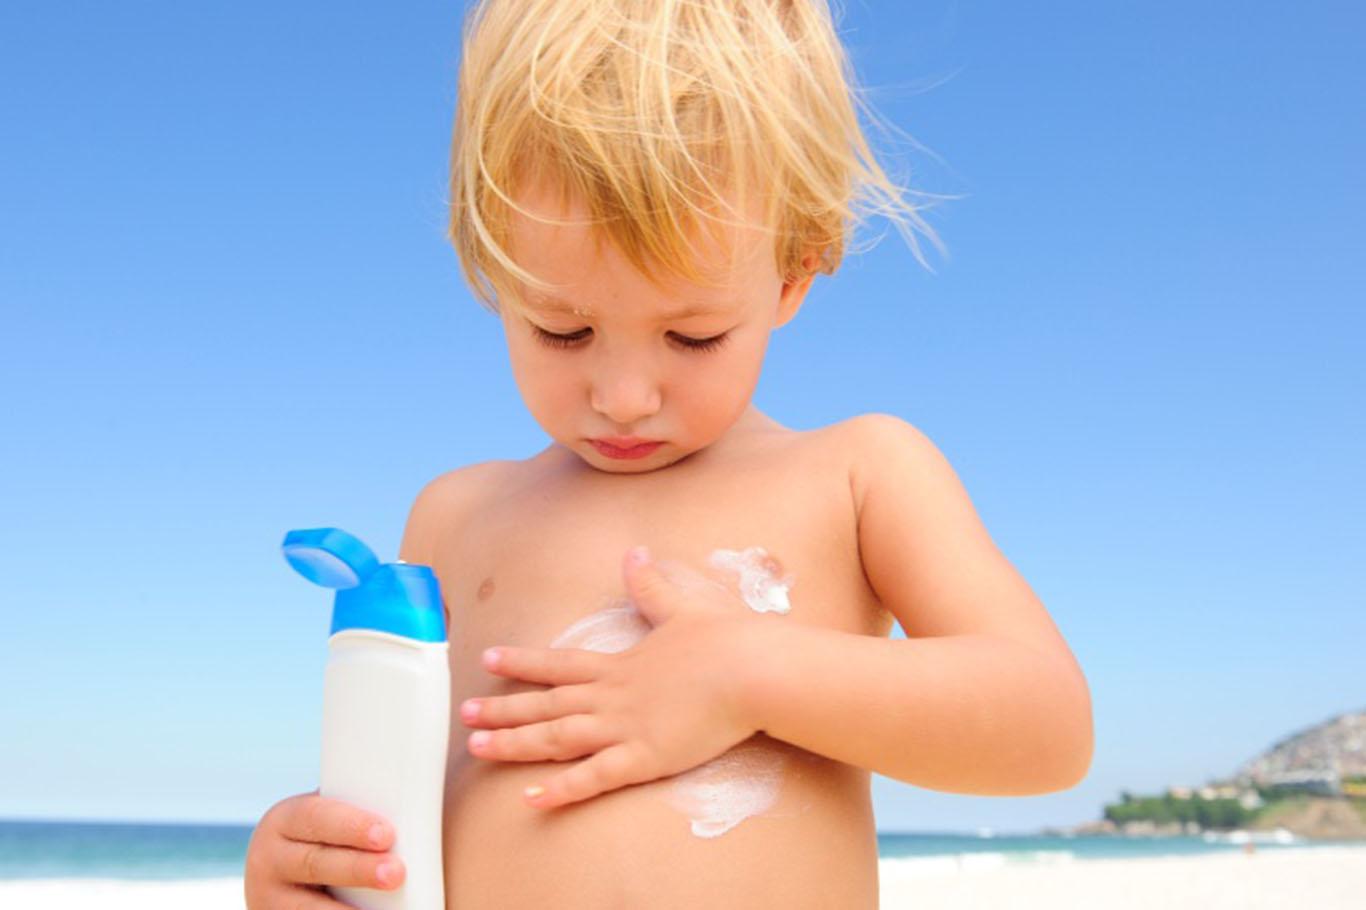 Güneş yanıkları çocuklarda cilt kanseri riskini arttırır